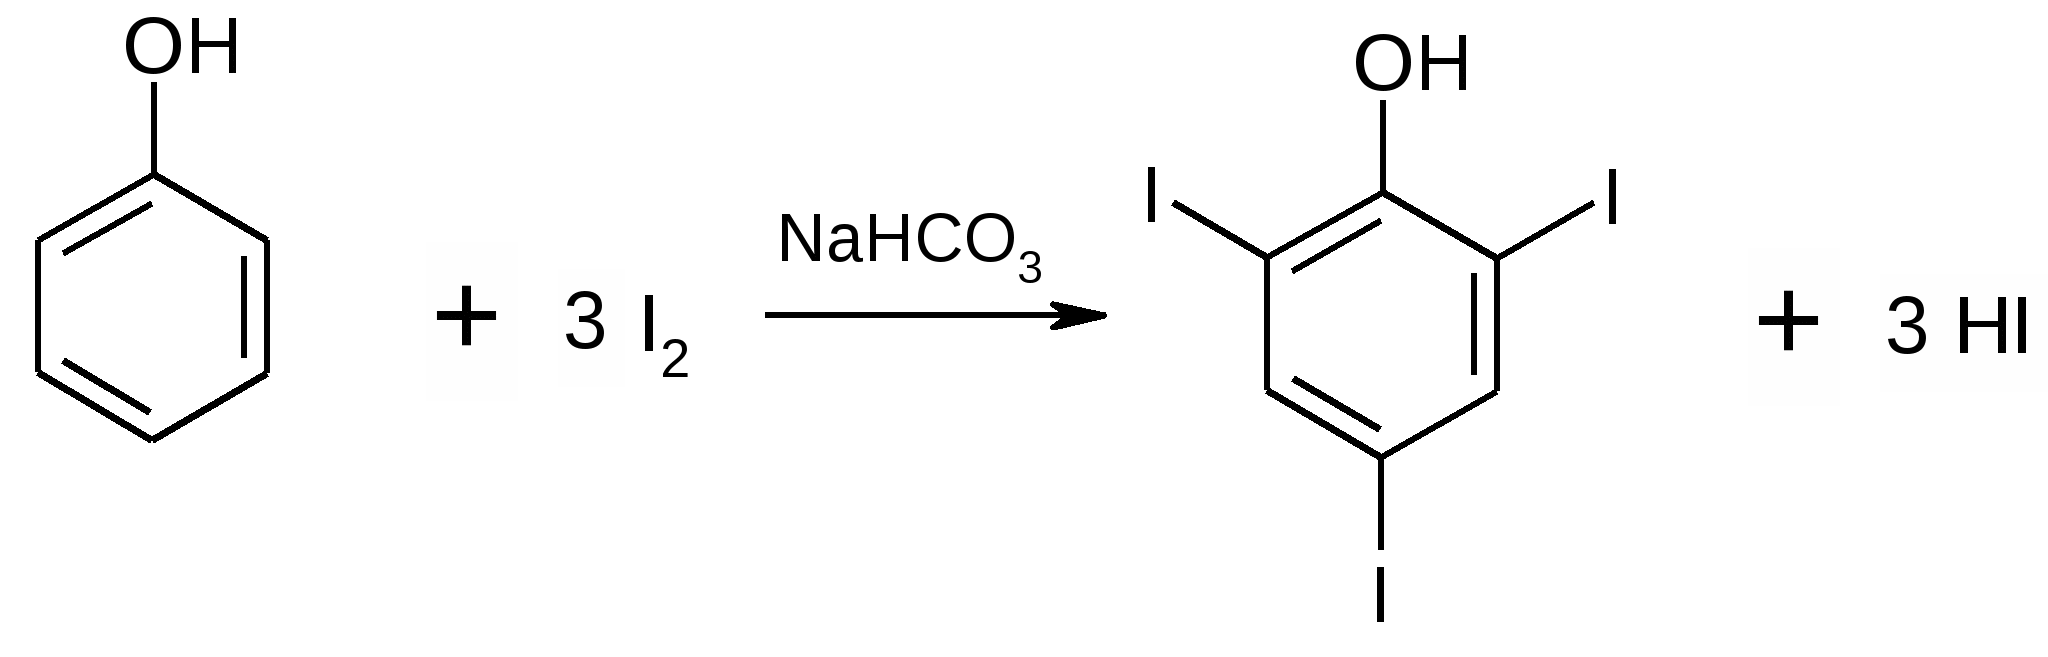 Nahco3 hi. Галогенирование фенола механизм реакции. Галогенирование резорцина. Галогенирование фенола реакция. Бромирование фенола механизм.